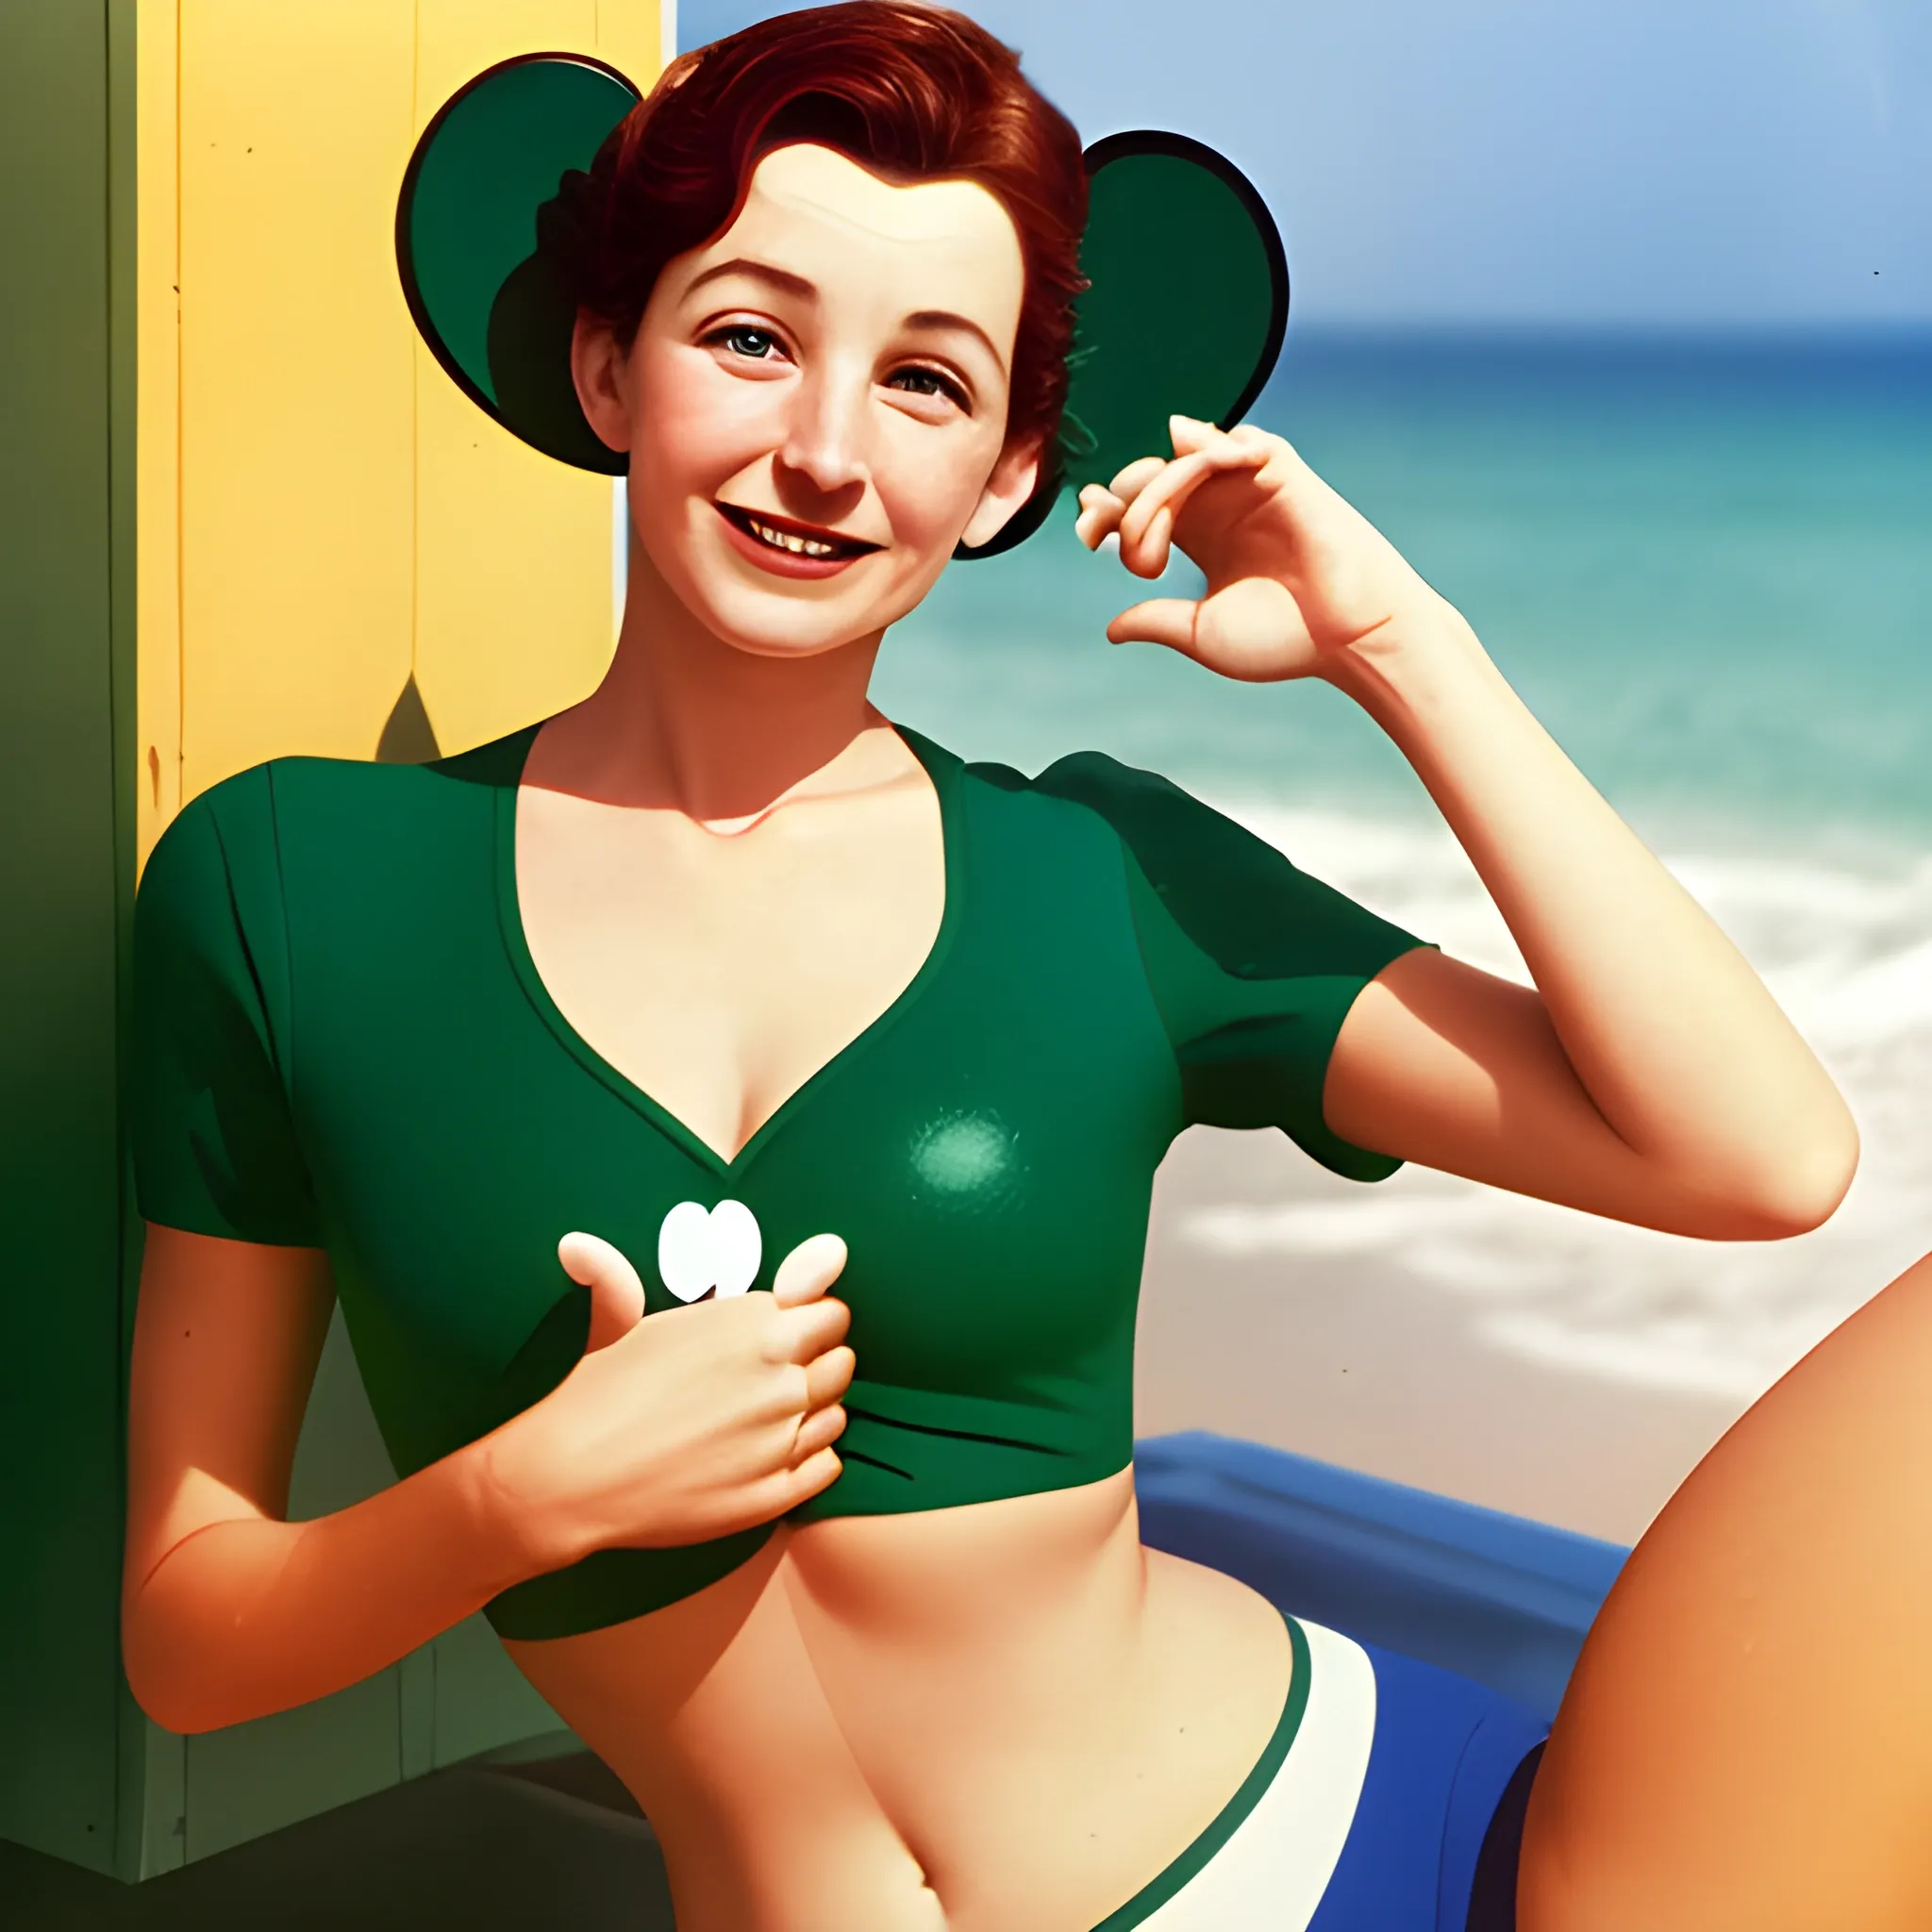 Mickey Mouse et une femme maigre en maillot vert, photographie